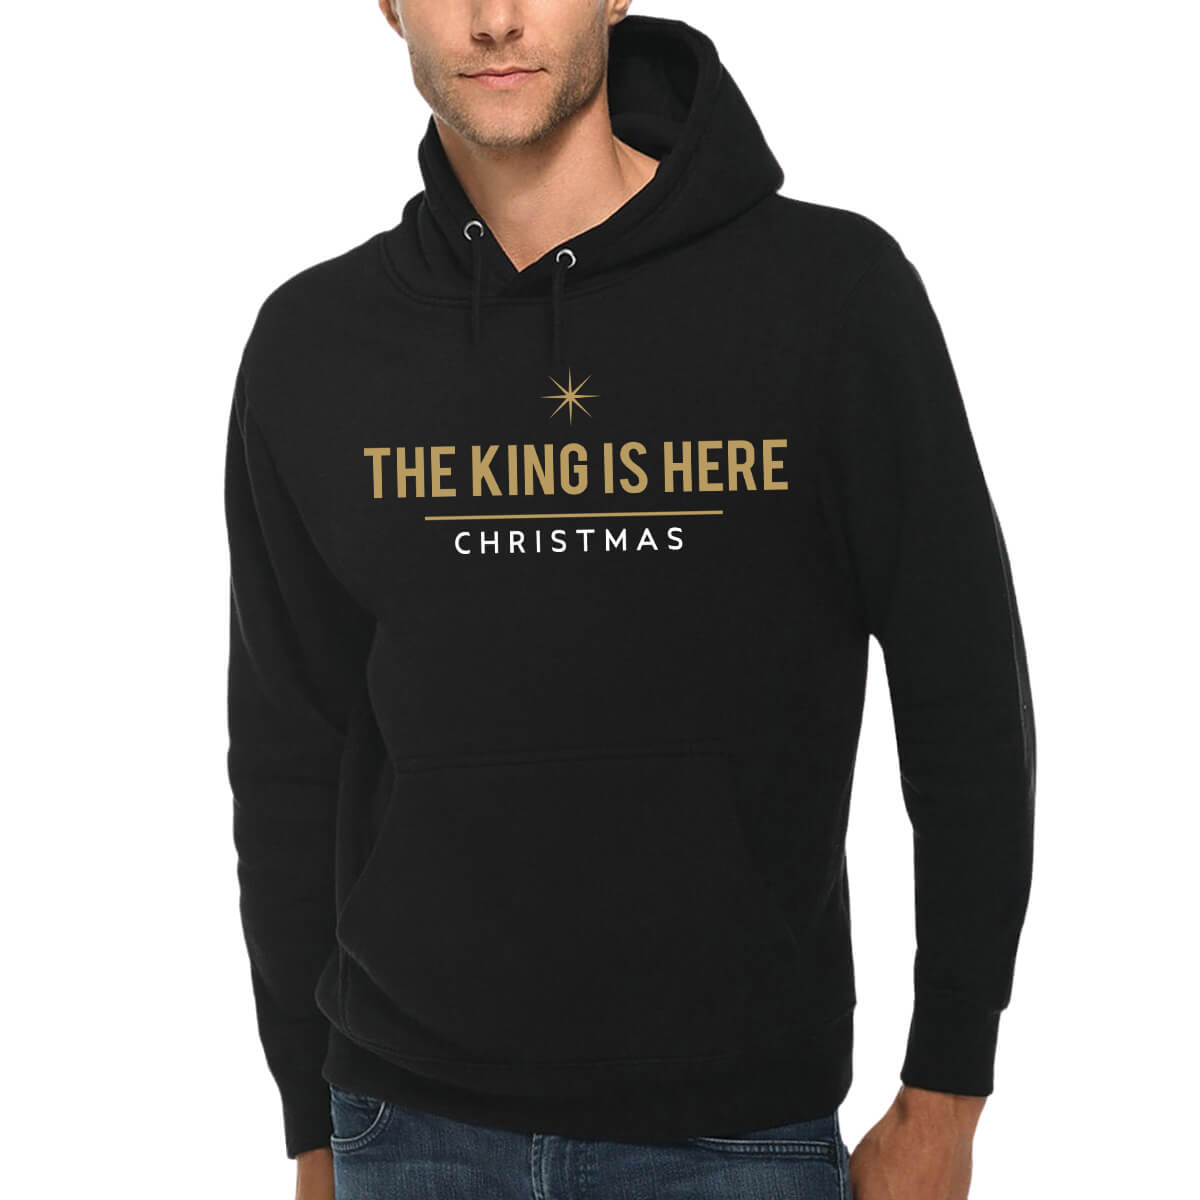 The King Is Here Christmas Men's Sweatshirt Hoodie